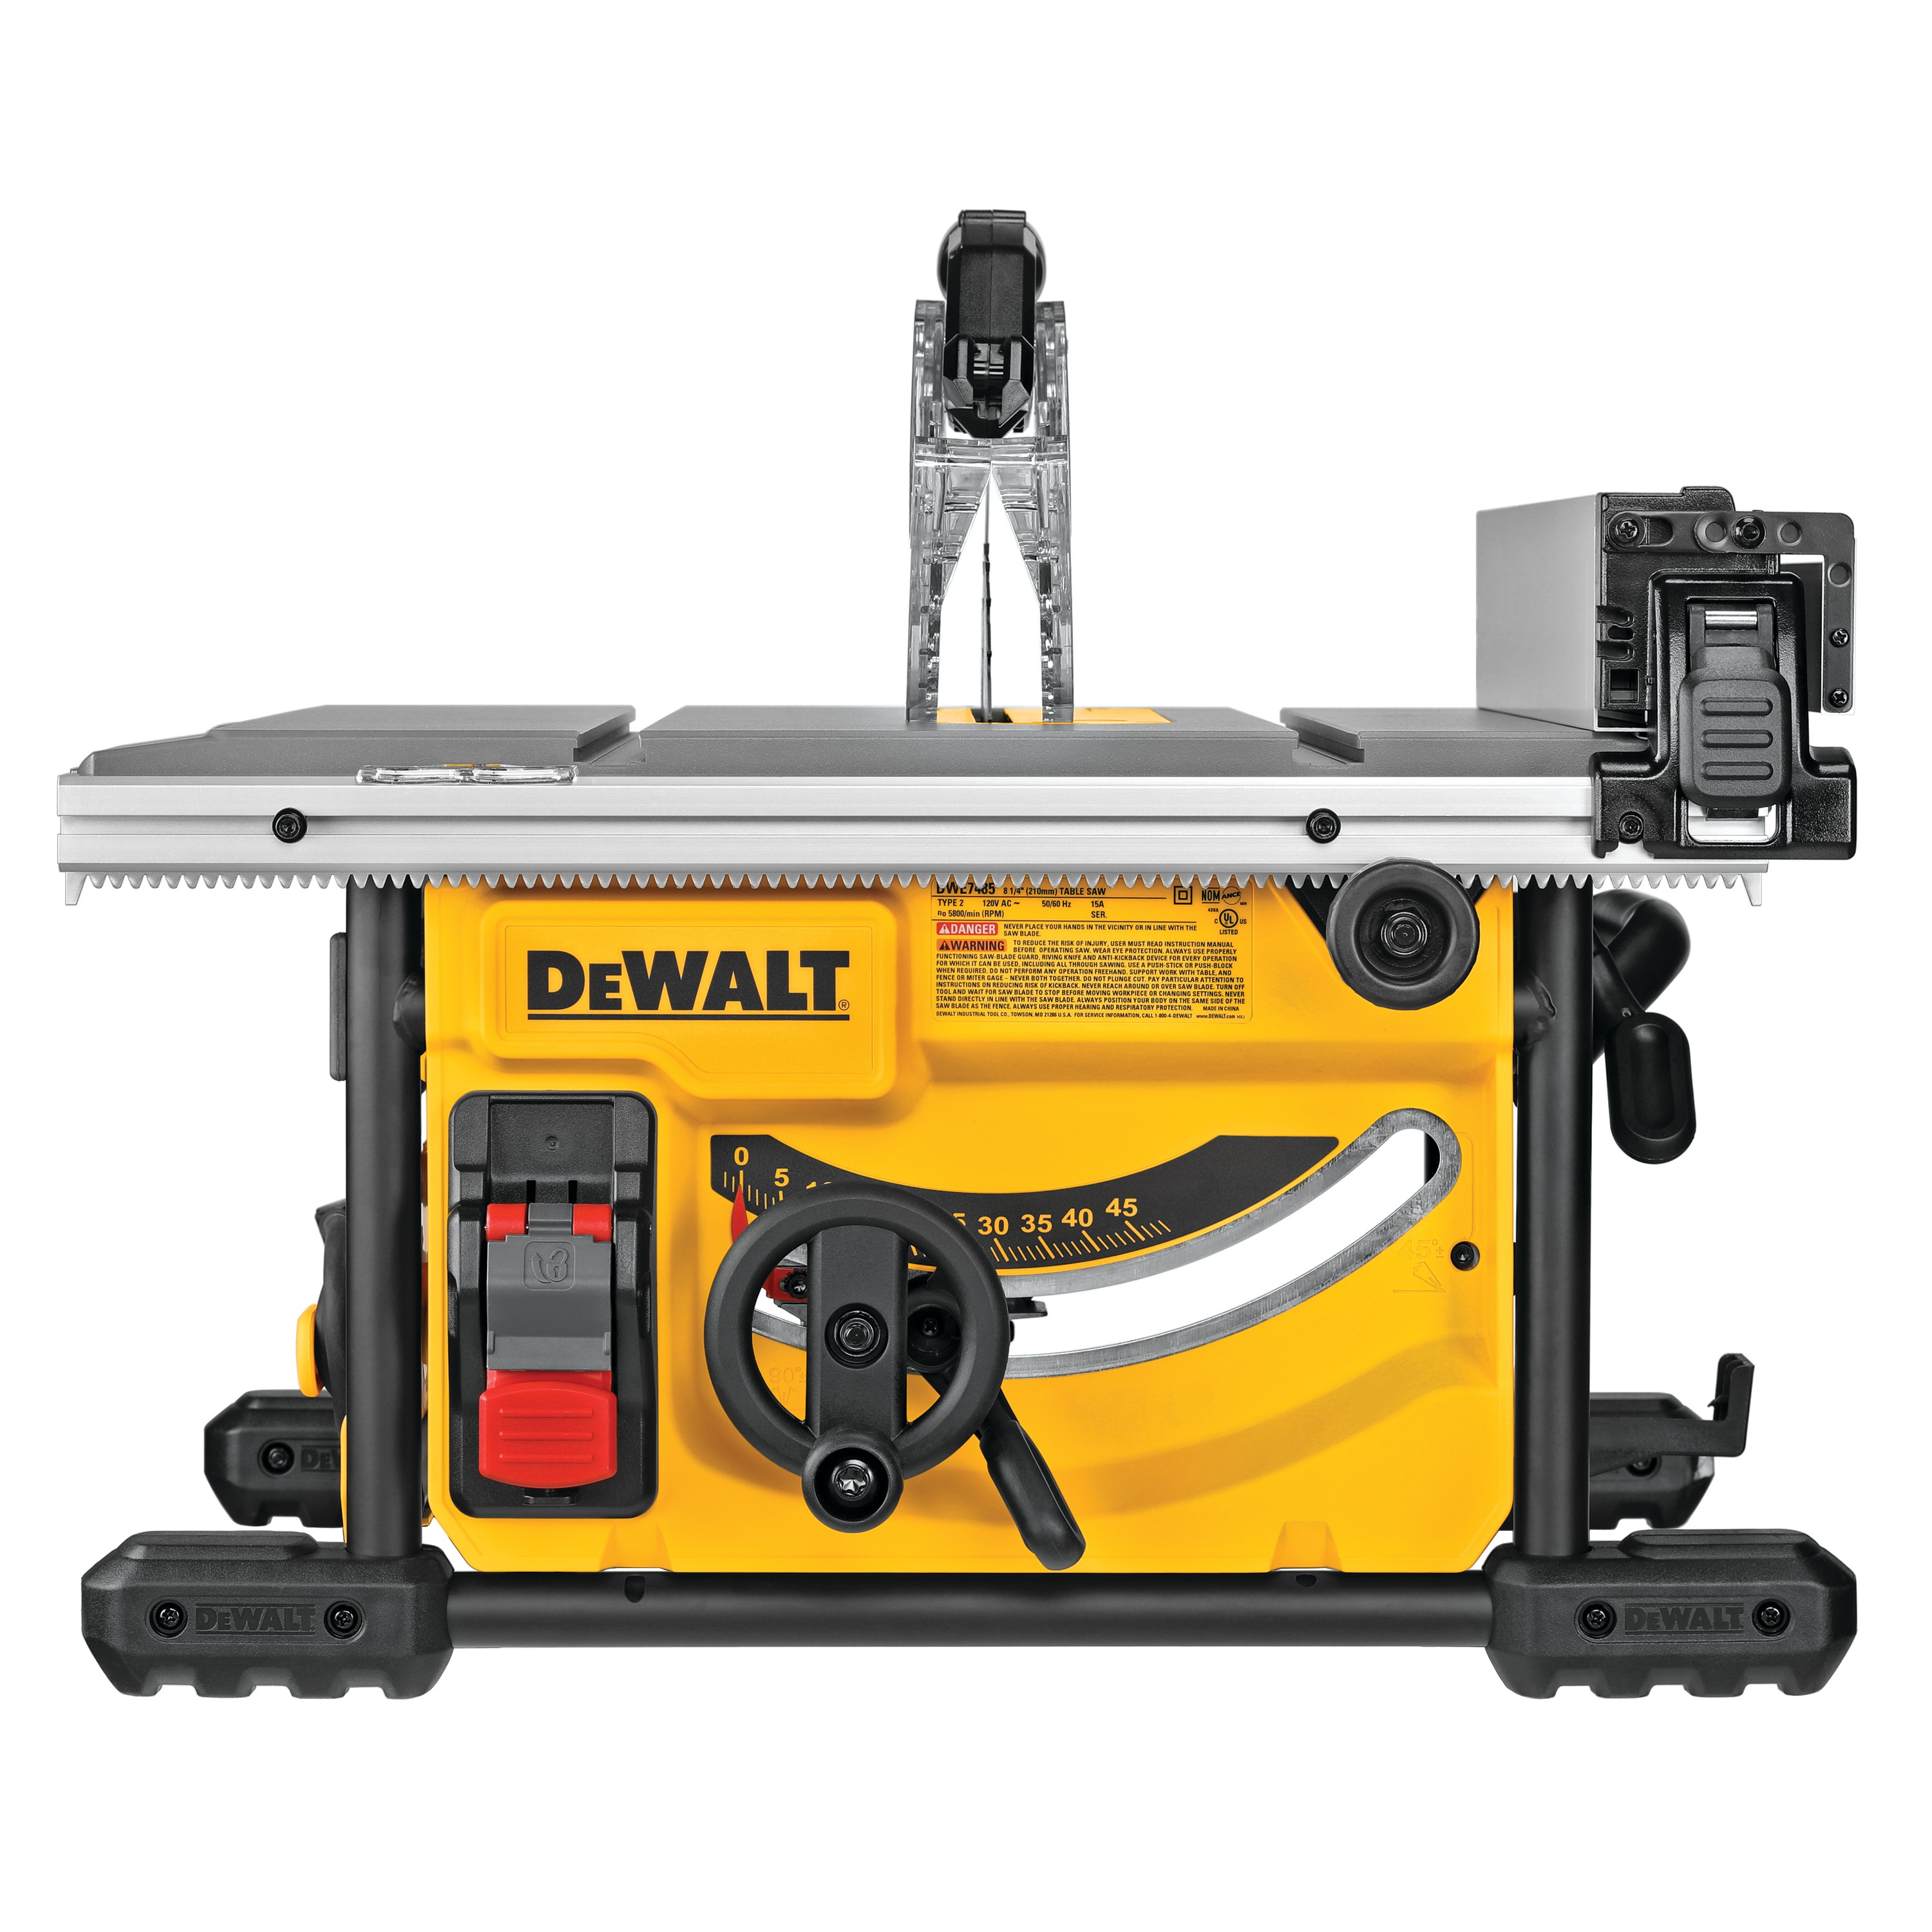 DEWALT - 814 in Compact Jobsite Table Saw - DWE7485